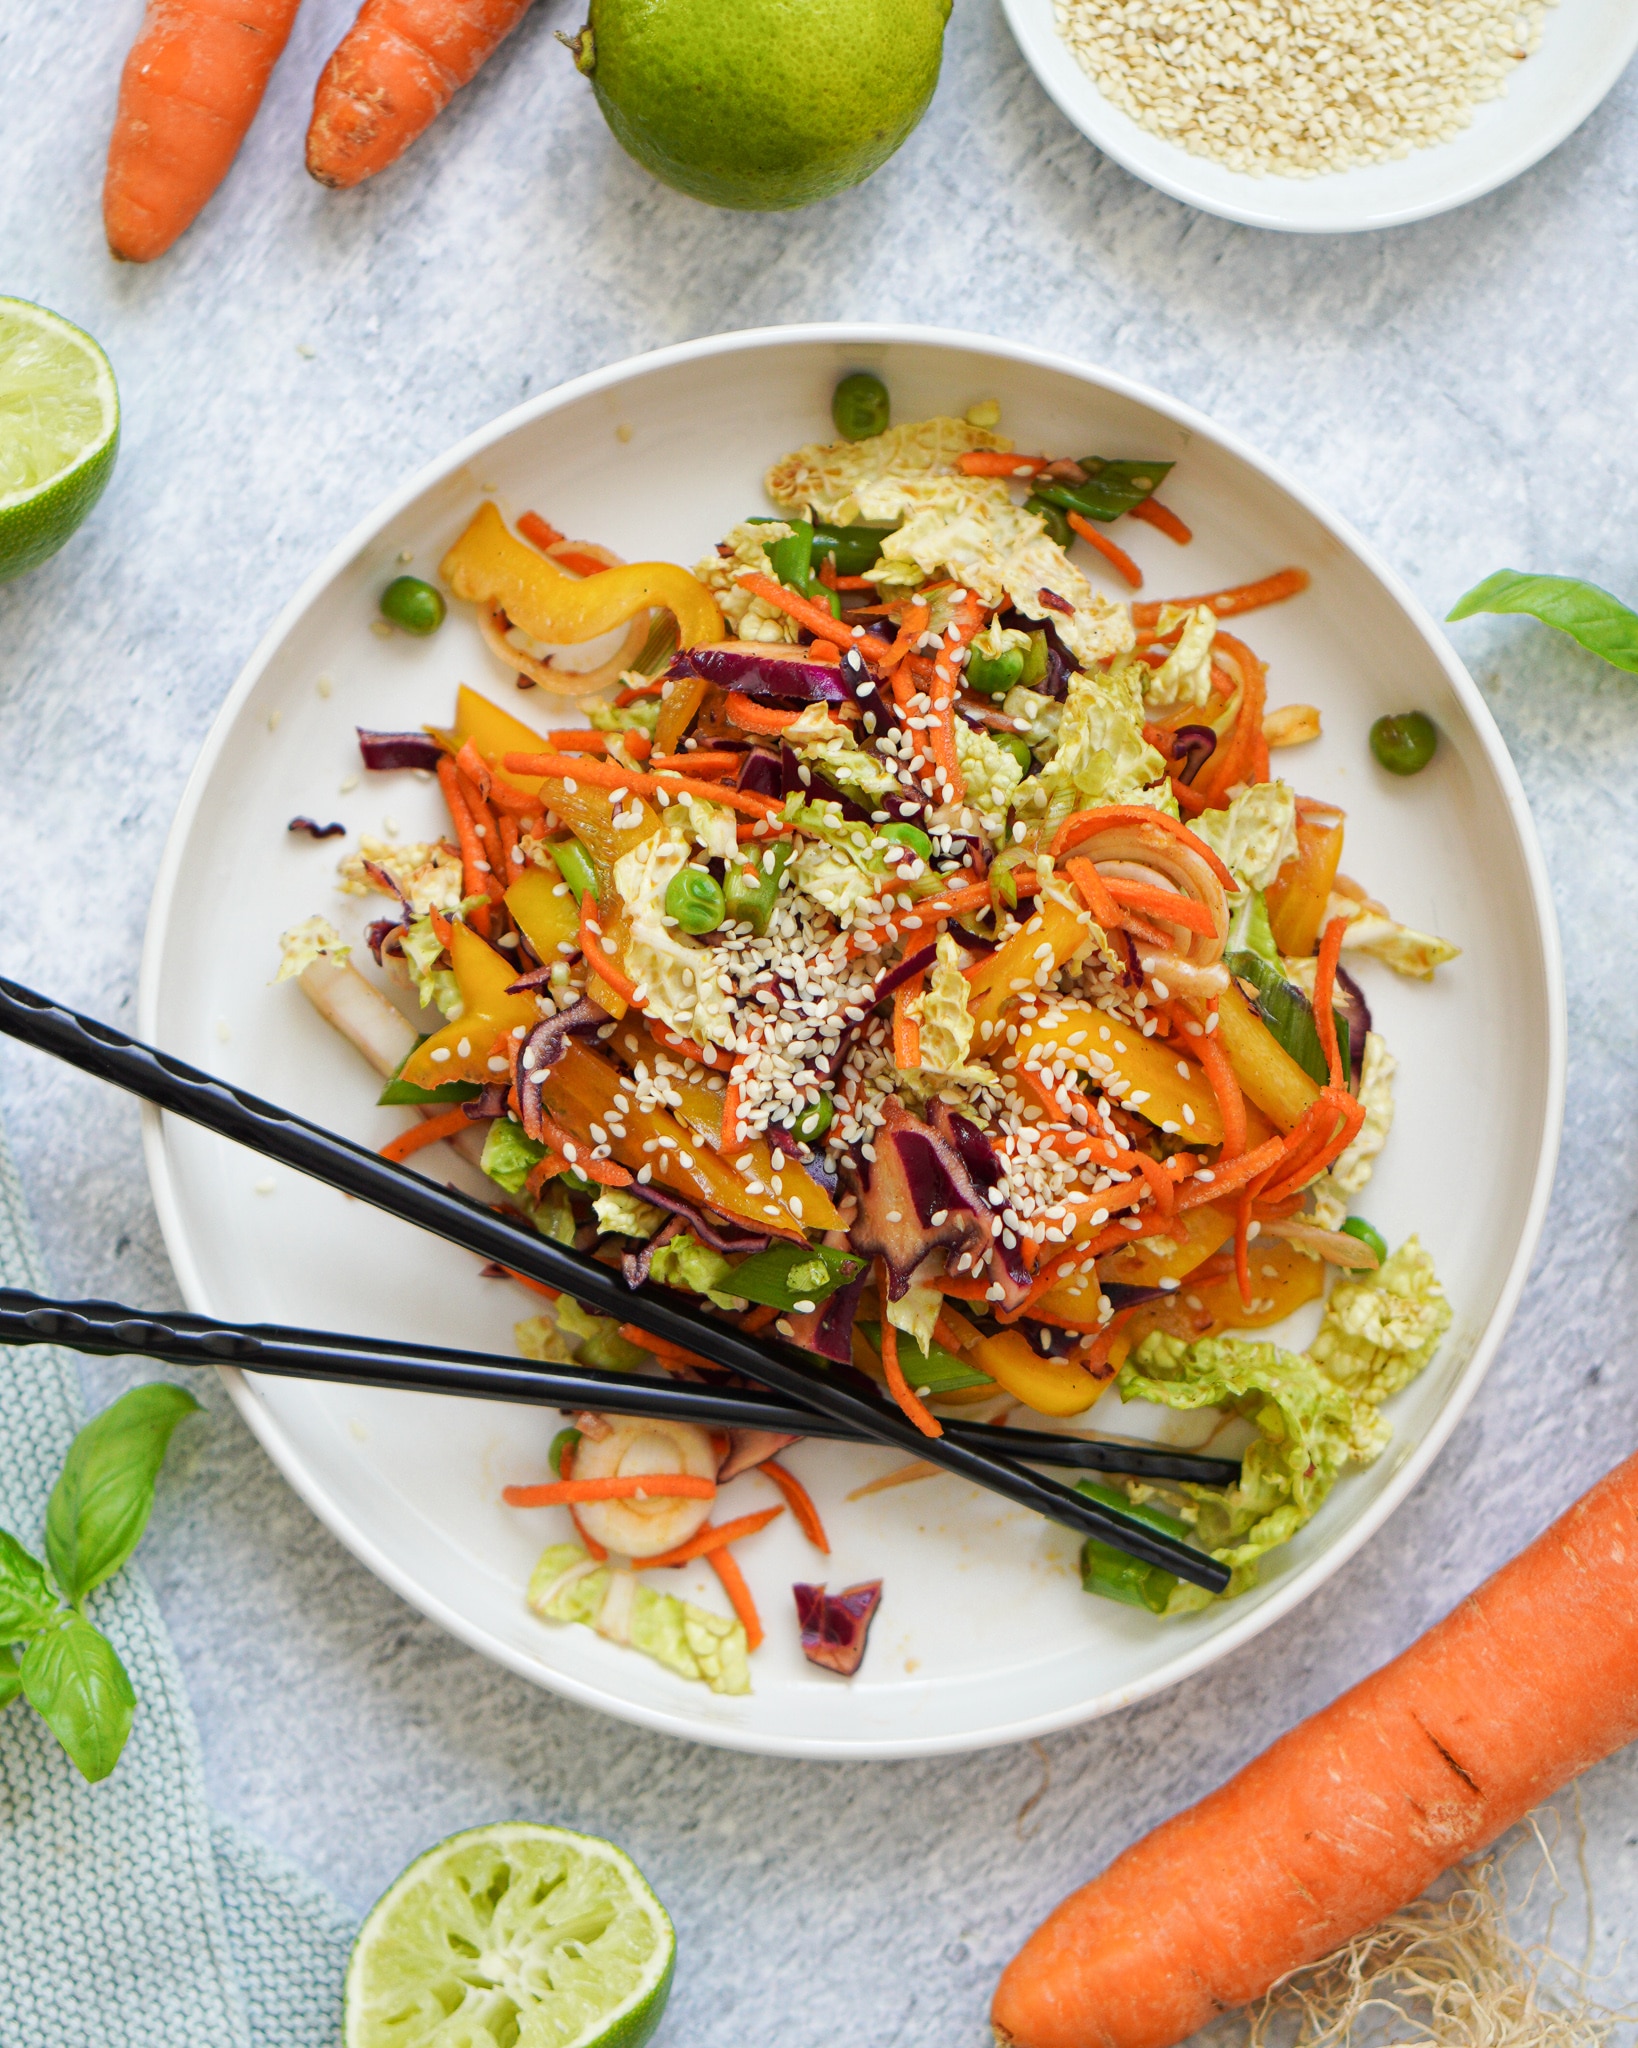 Asiatischer Salat mit Chinakohl & Sesam Dressing